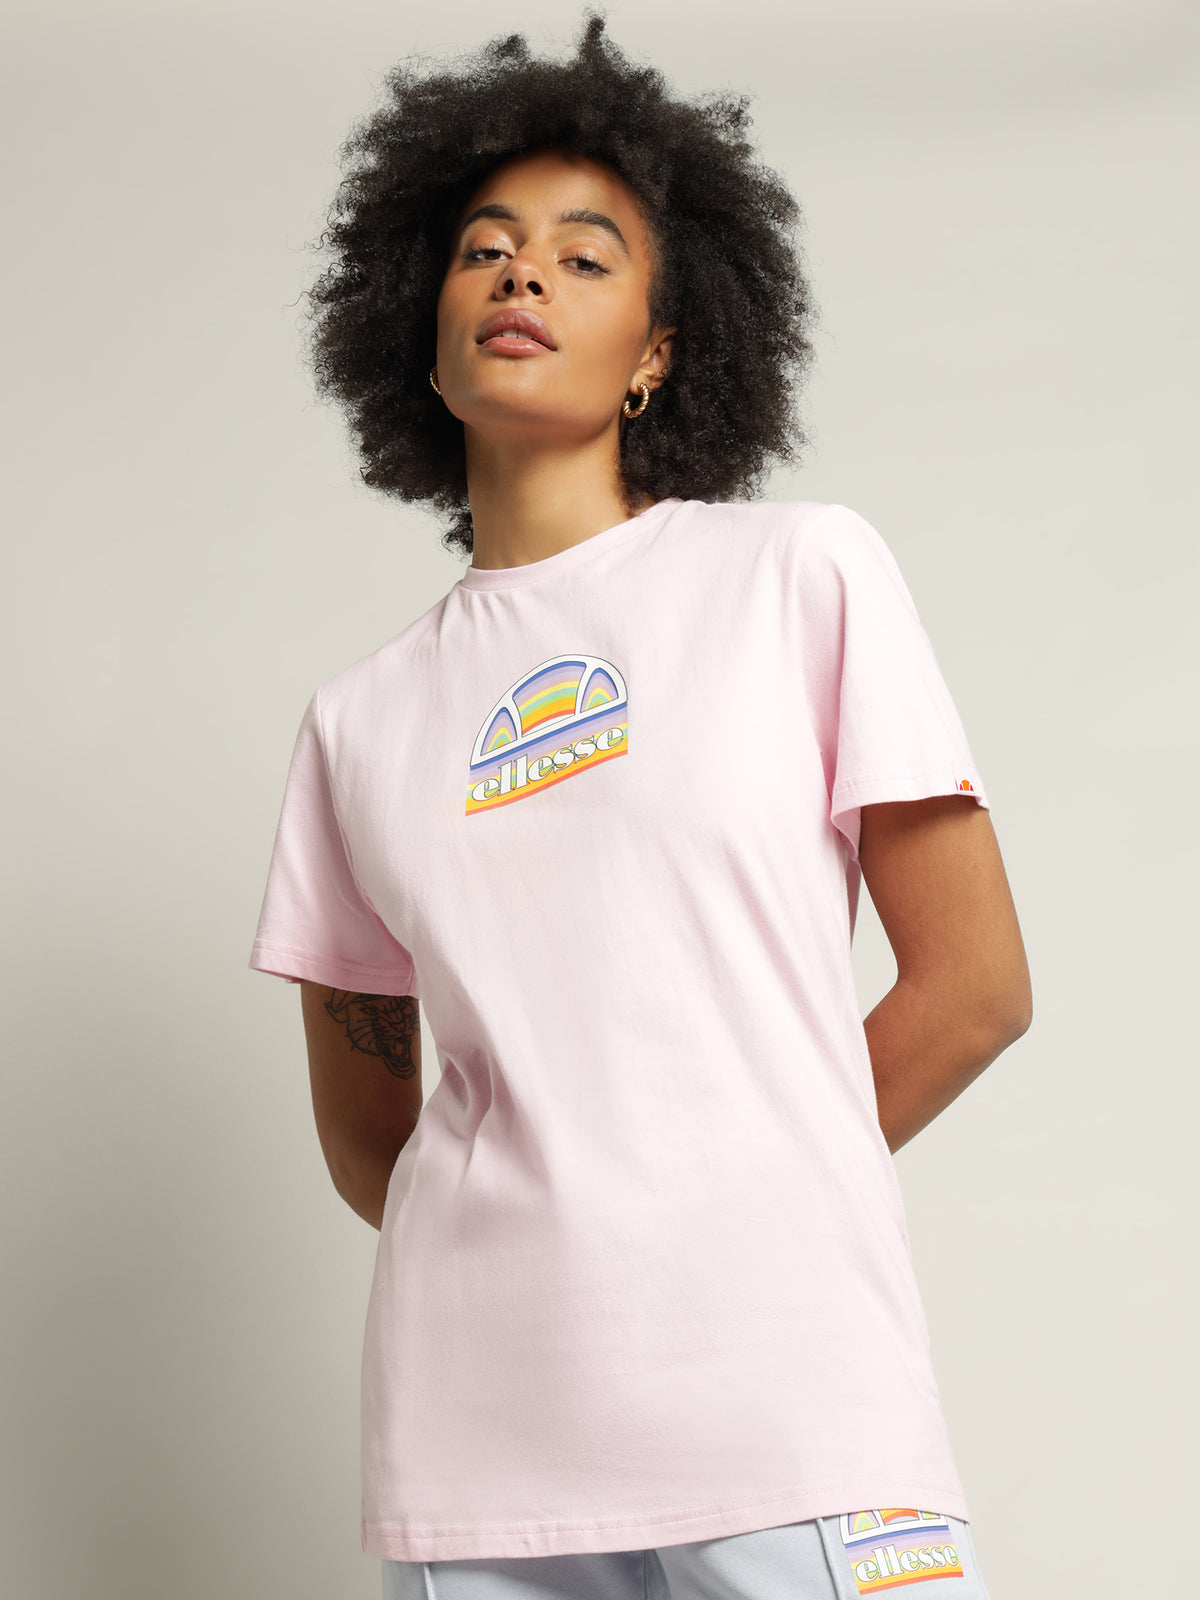 Tardi T-Shirt in Light Pink